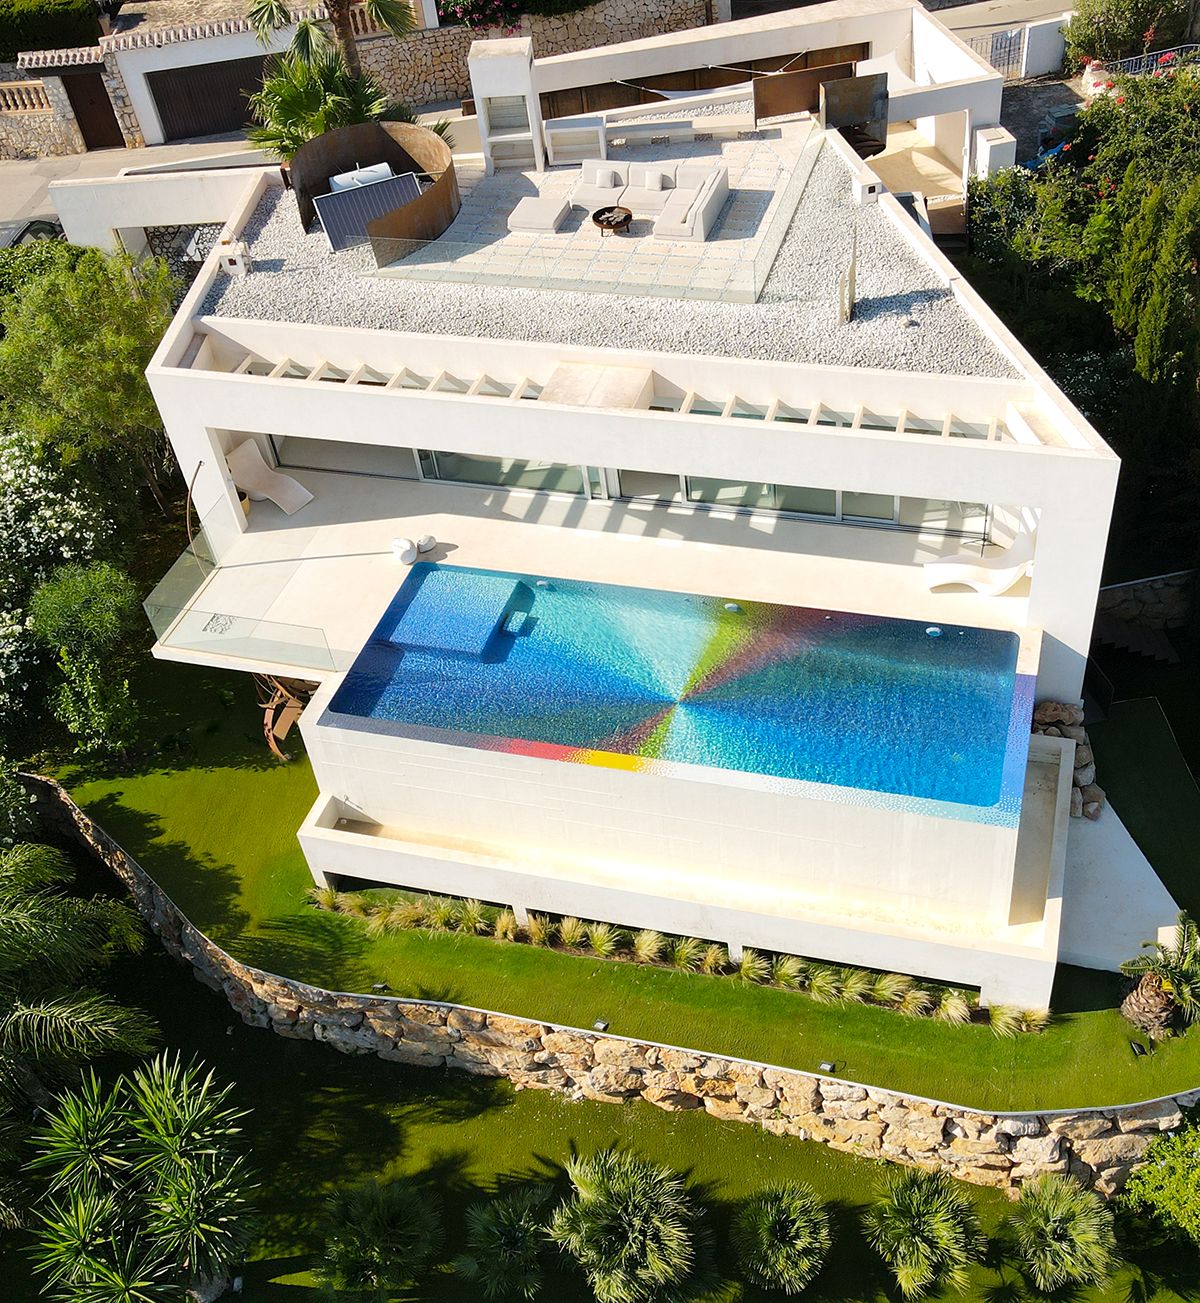 una piscina infinita con diseño de felipe pantone, en mosaico multicolor